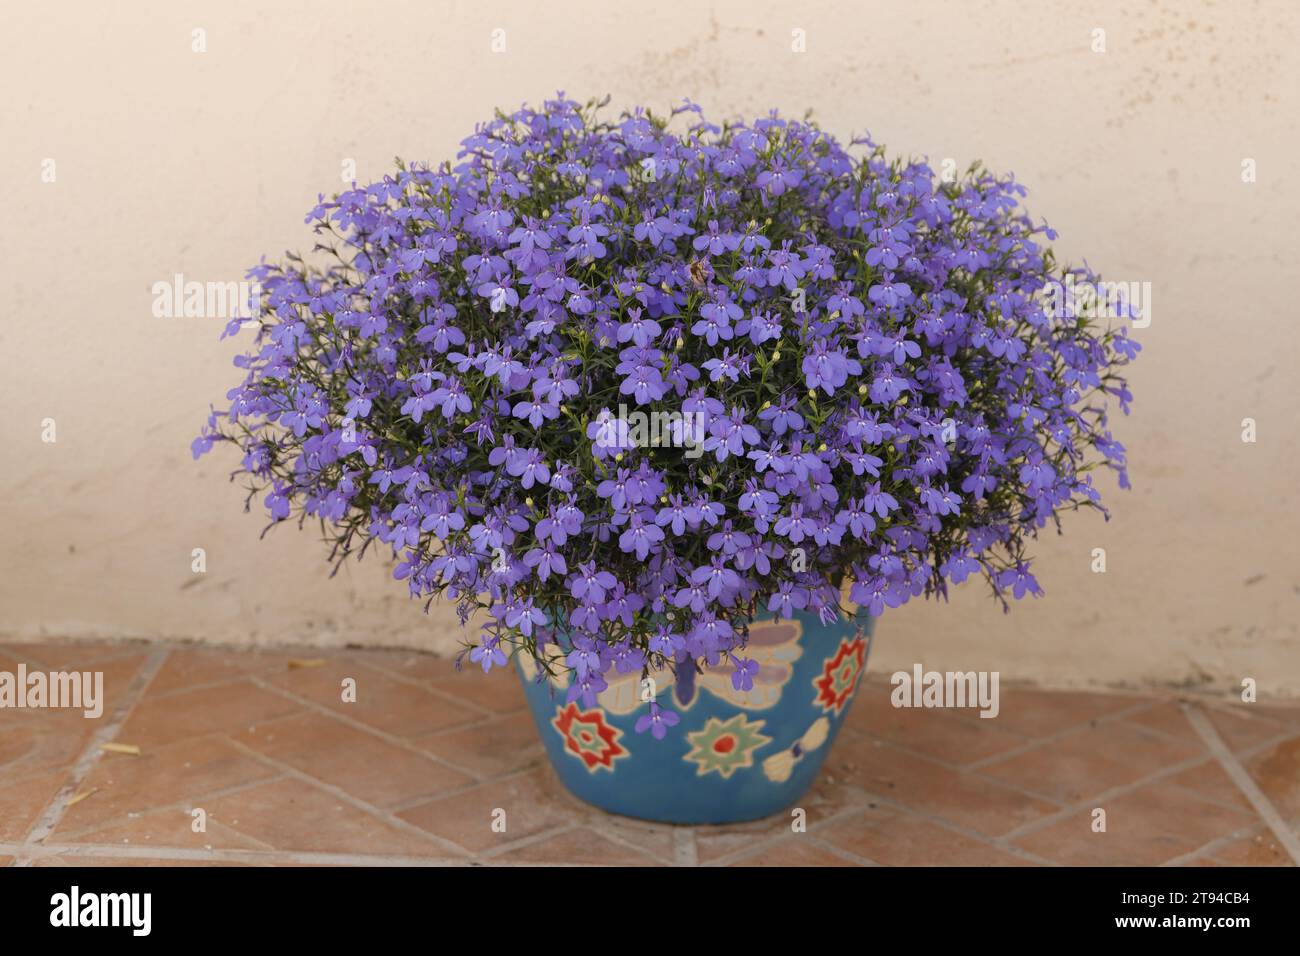 Blue lobelia flowers in a flower pot Stock Photo